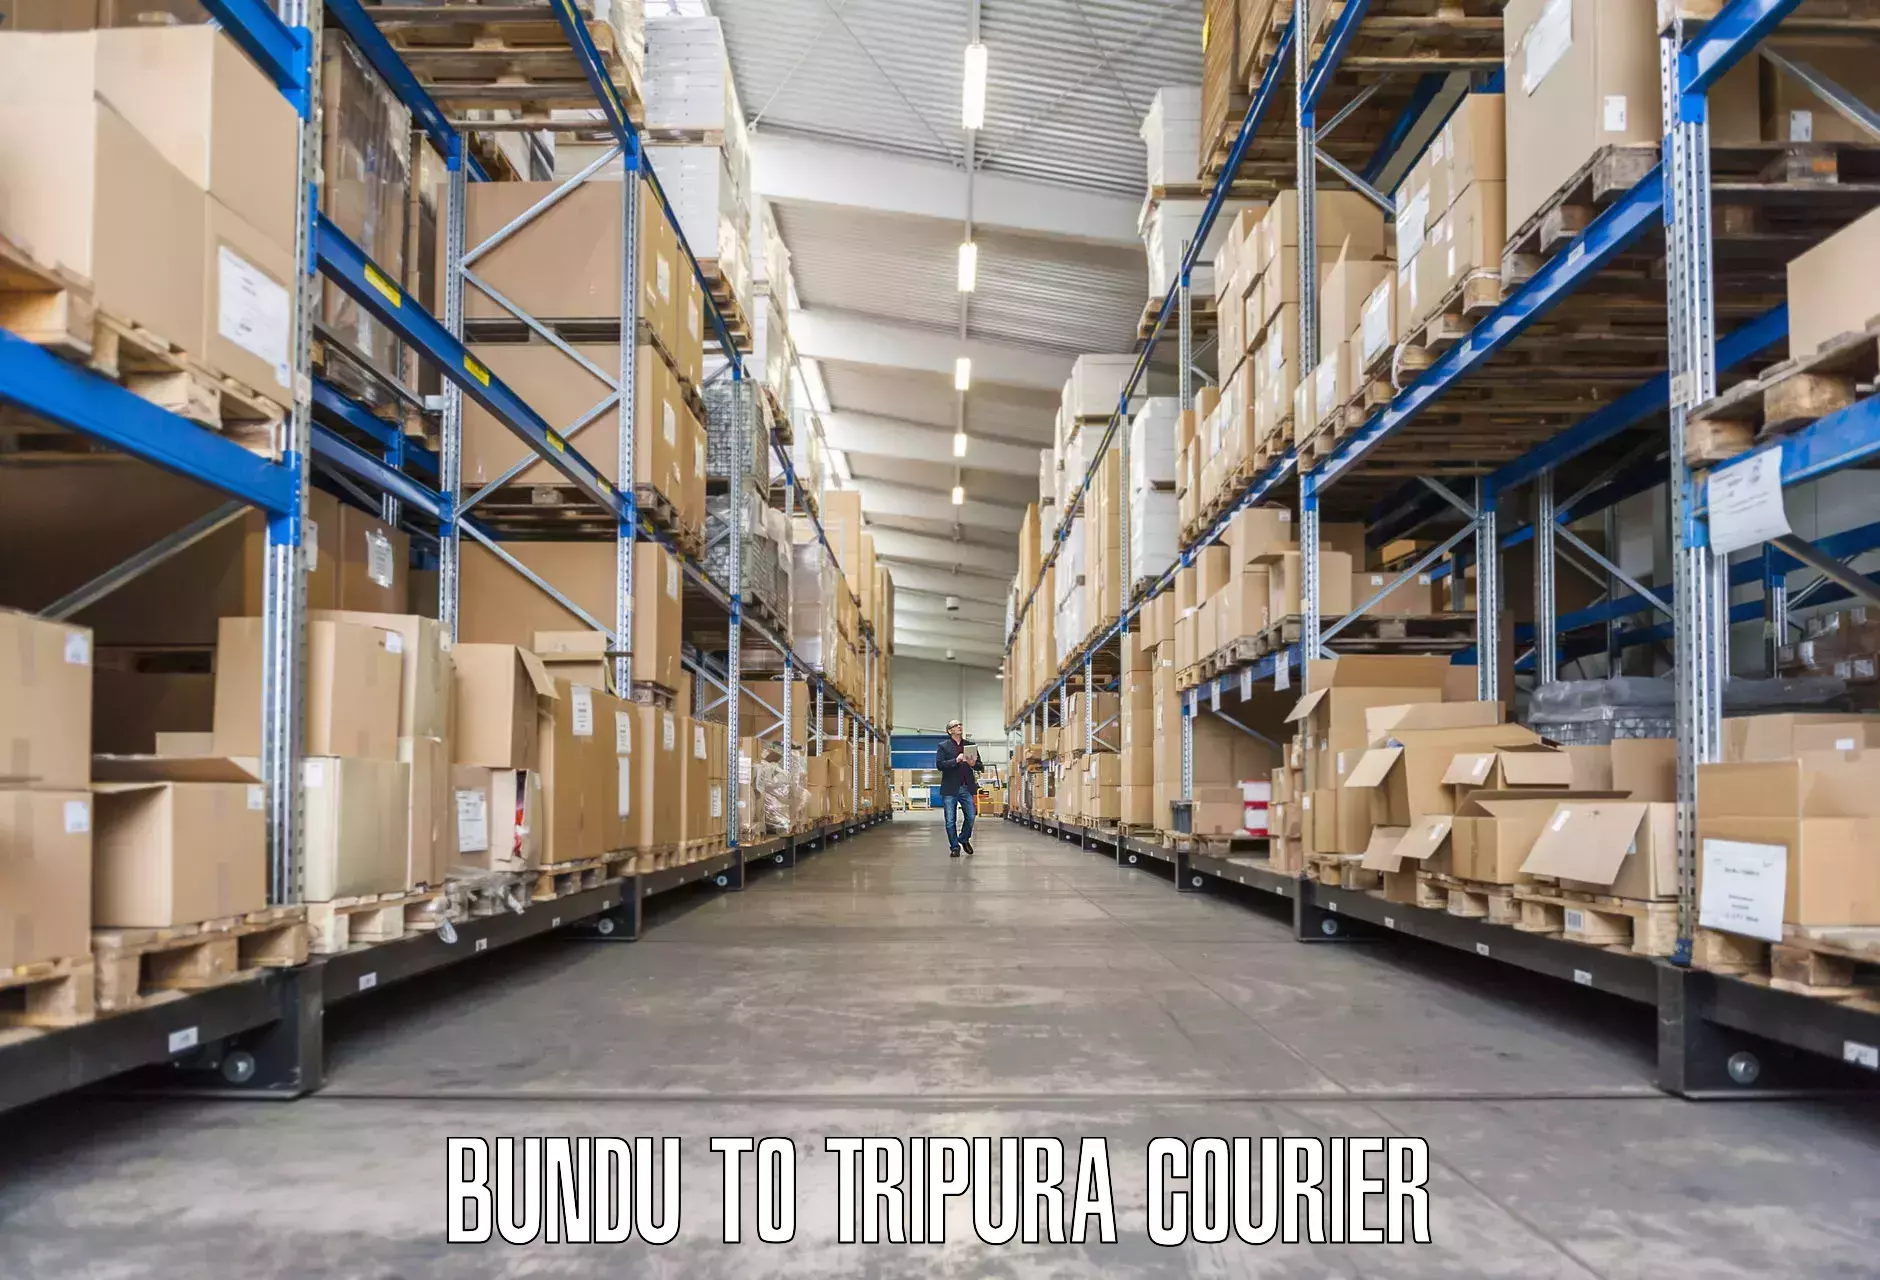 Furniture transport services Bundu to Tripura